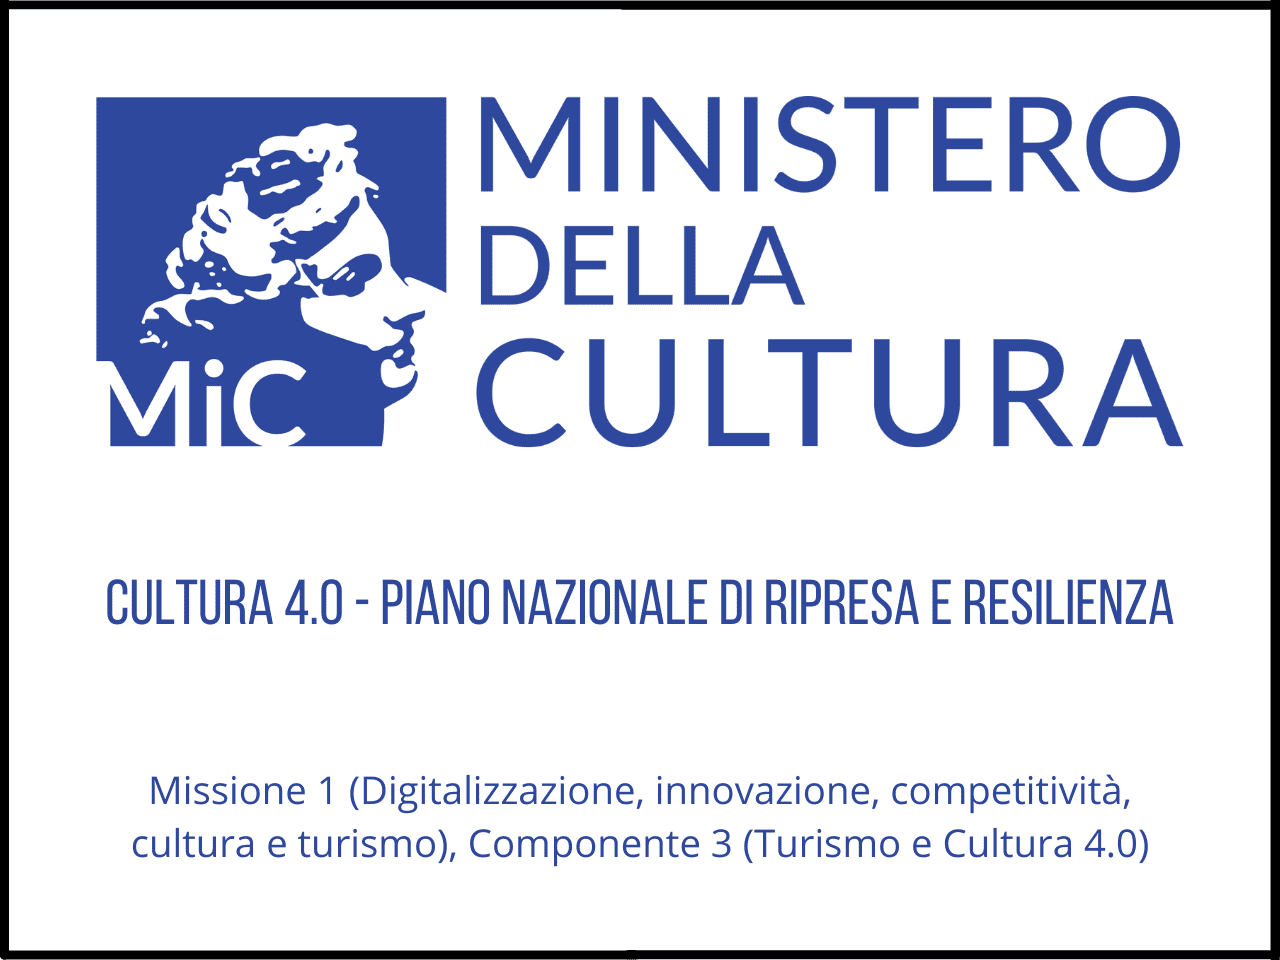 Opportunità digitali enti associazioni: il PNRR cultura 4.0 offre formazione e supporto per digitalizzare la cultura. Scopri come partecipare